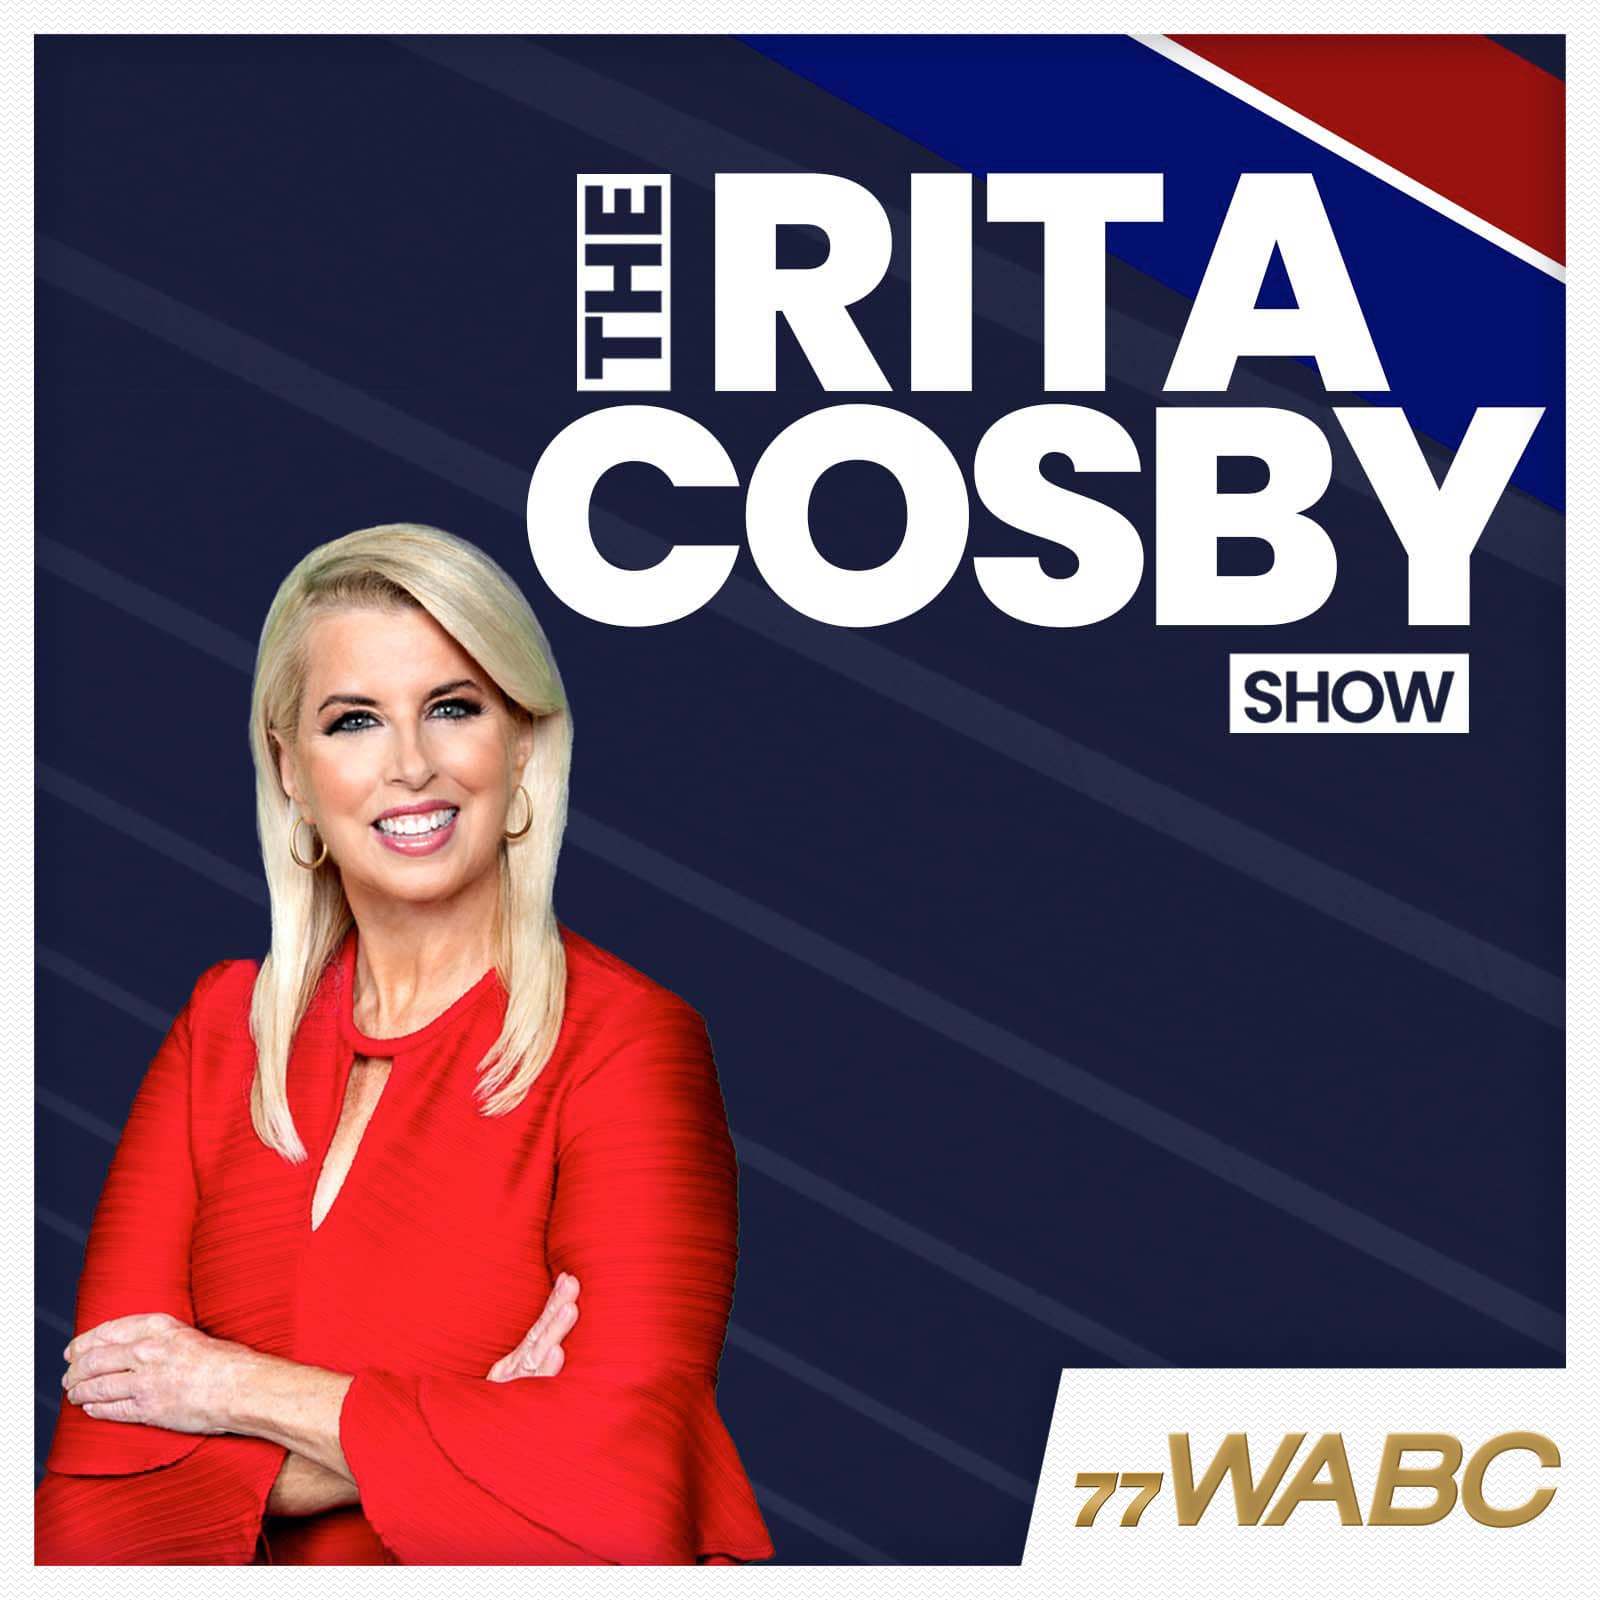 rita-cosby-podcast-new-logo-205